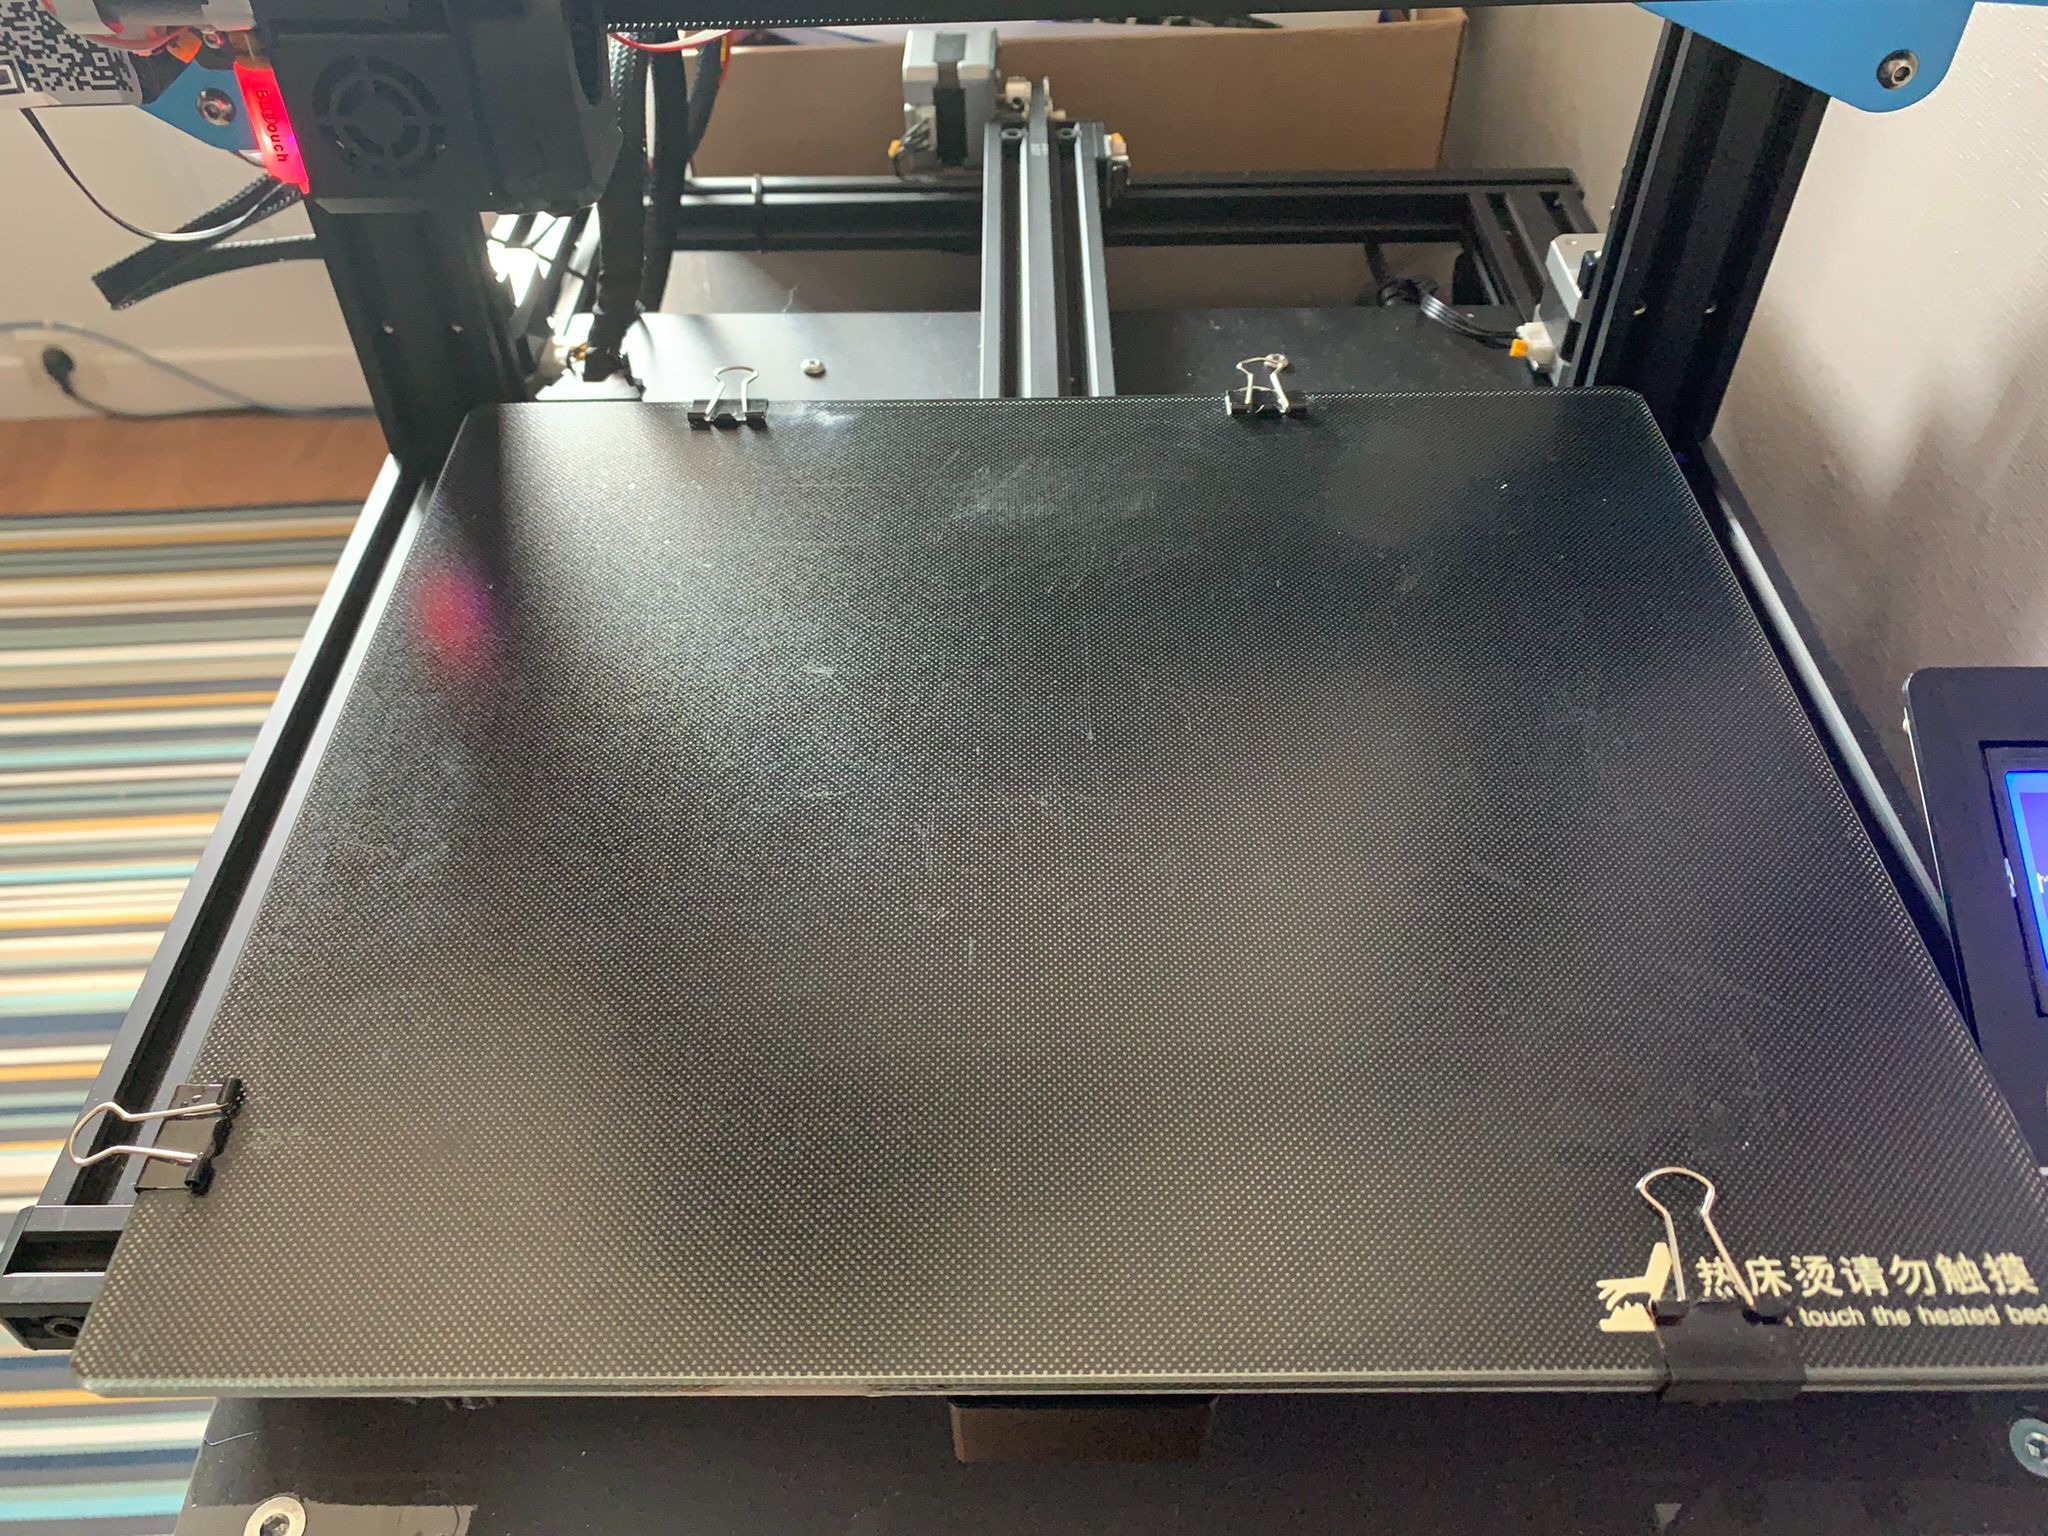 Impossible de décoller l'objet du plateau. - Creality - Forum pour les imprimantes  3D et l'impression 3D